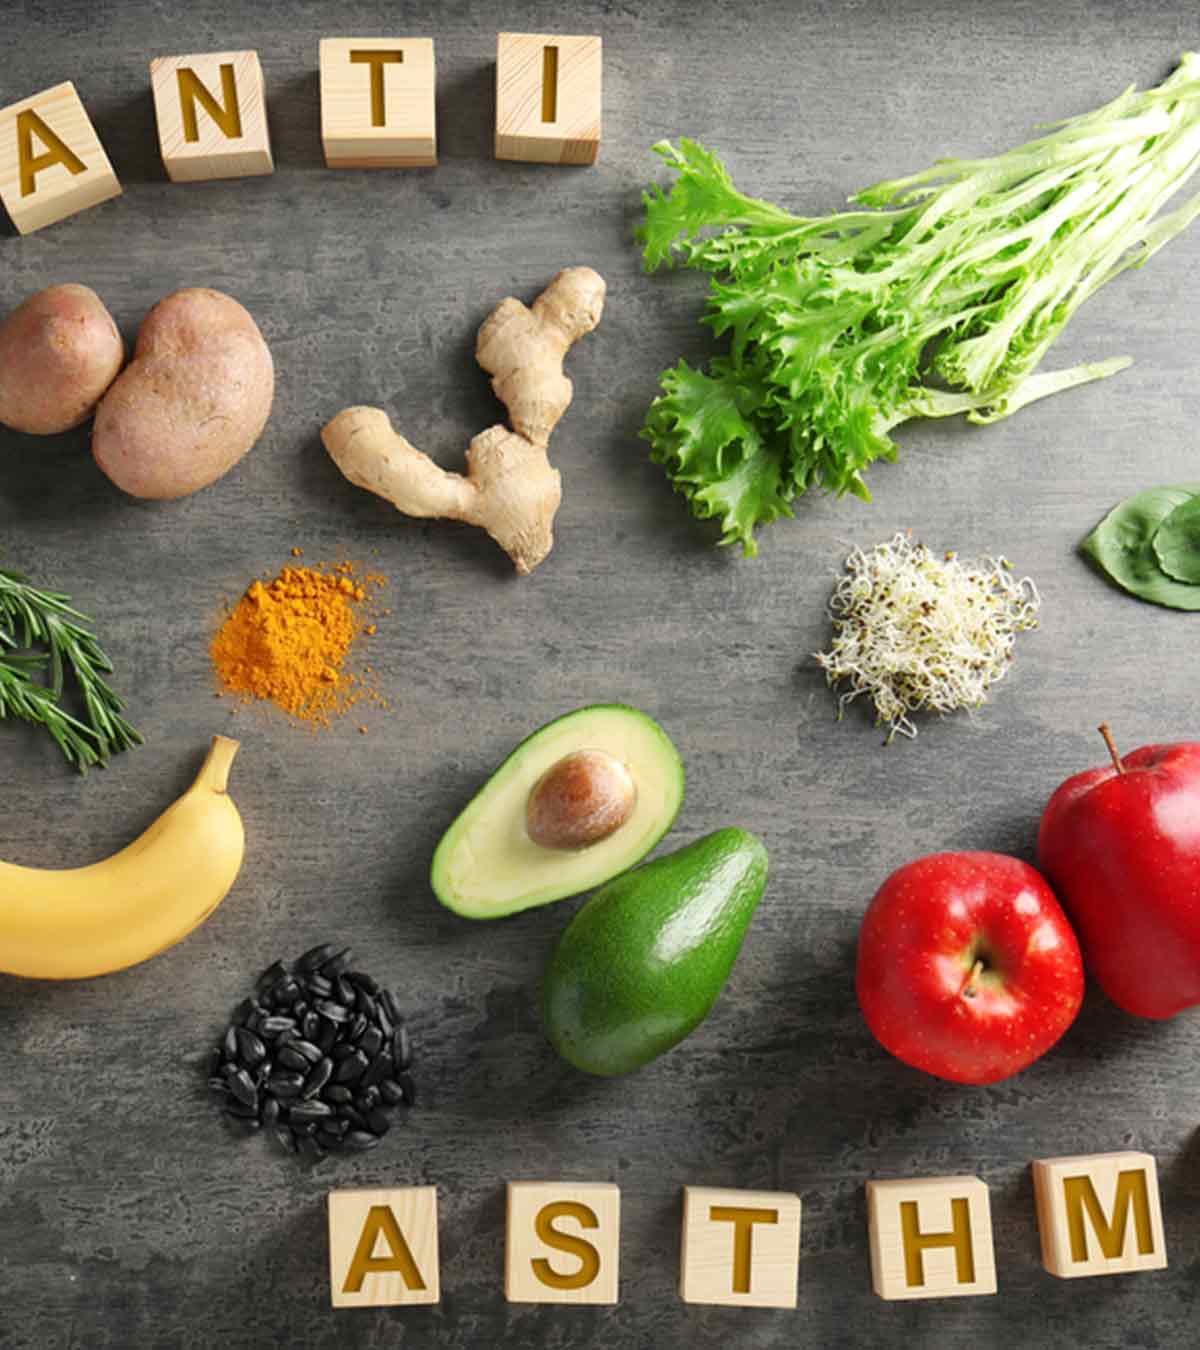 अस्थमा में क्या खाएं और क्या न खाएं – अस्थमा के लिए आहार – Asthma Diet in Hindi